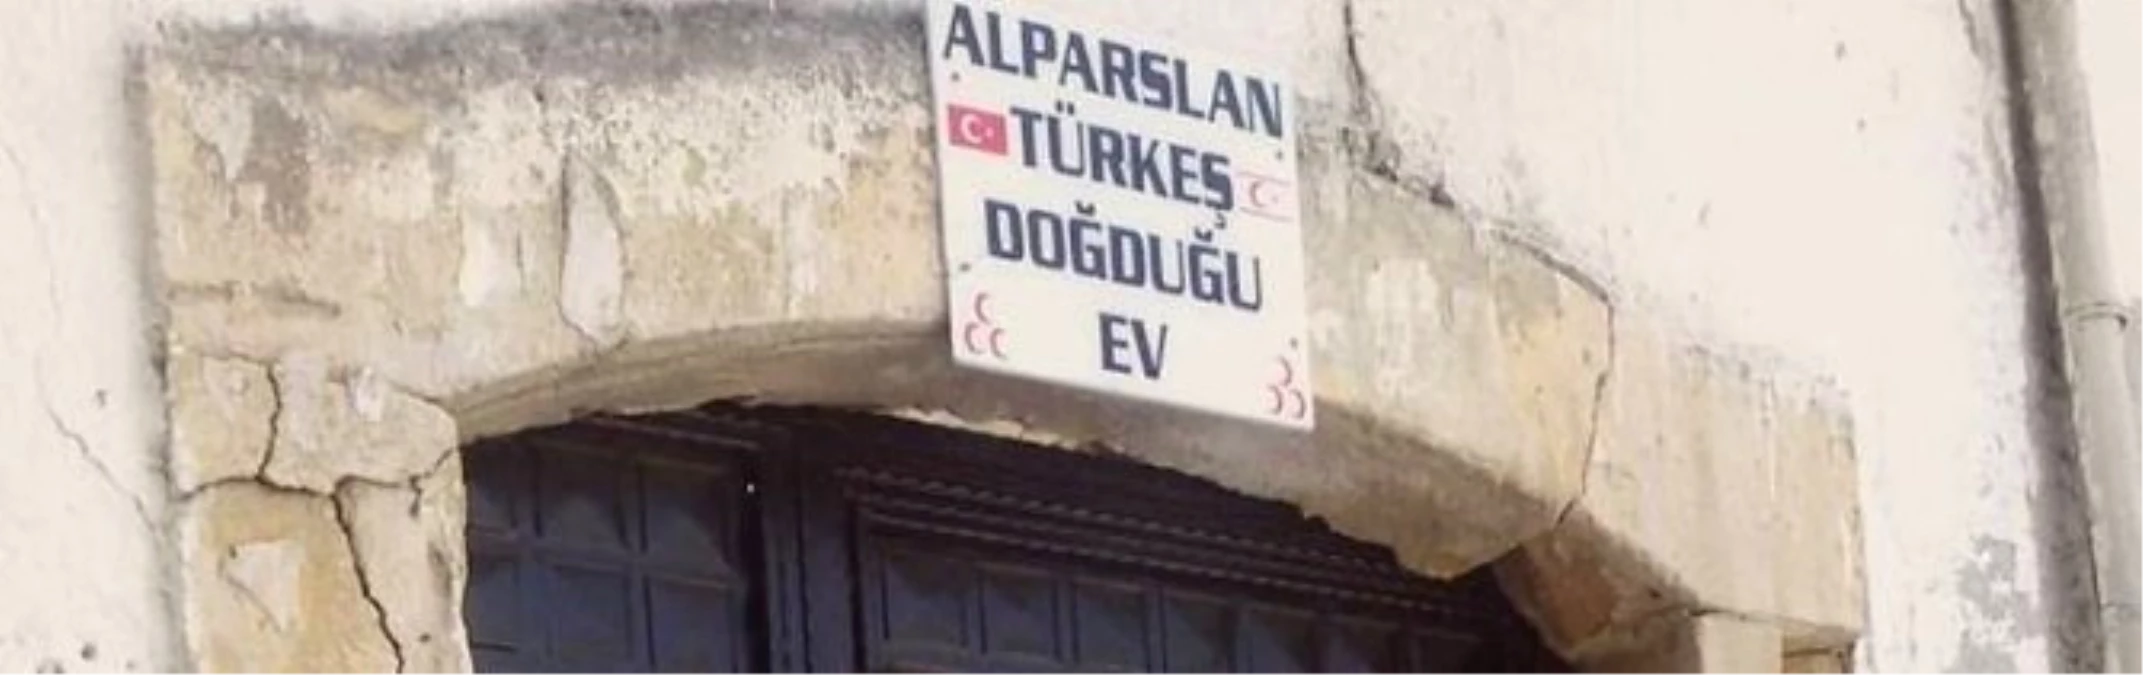 KKTC Bakanı Ataoğlu: "Alparslan Türkeş\'in Doğduğu Evin Restorasyon Projesi Hazır"